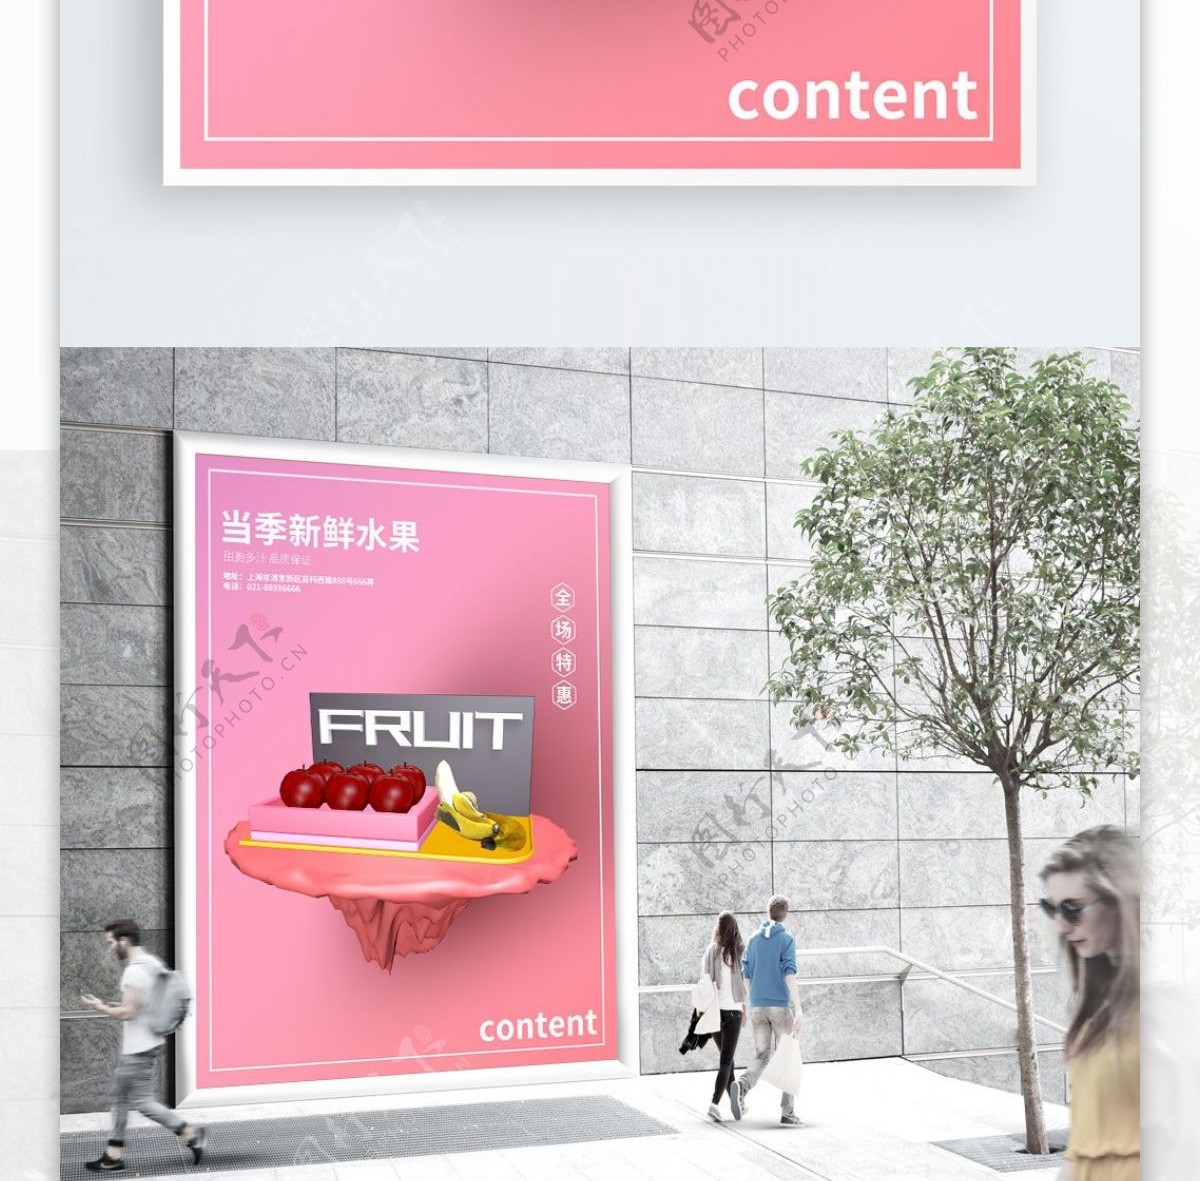 简约创意水果店促销海报设计PSD模板